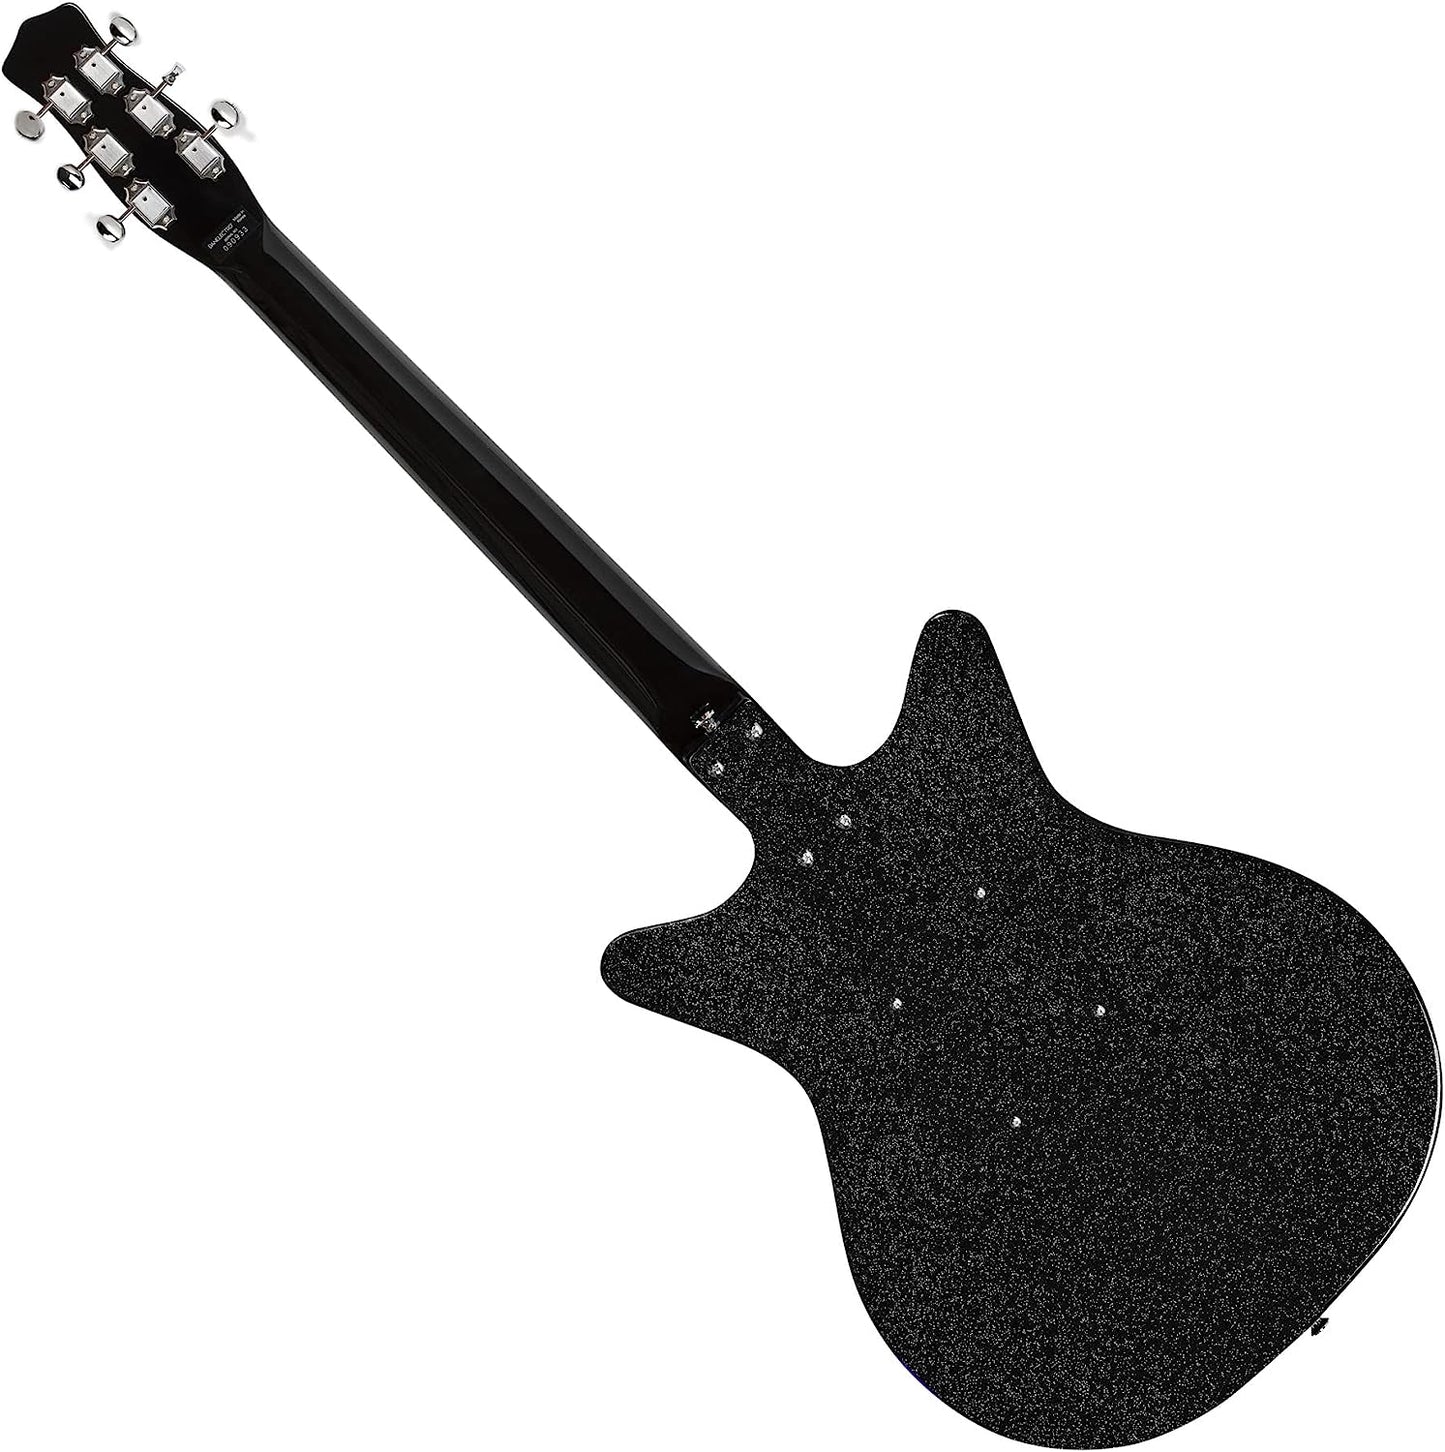 Danelectro Blackout 59 Electric Guitar - Black Metalflake